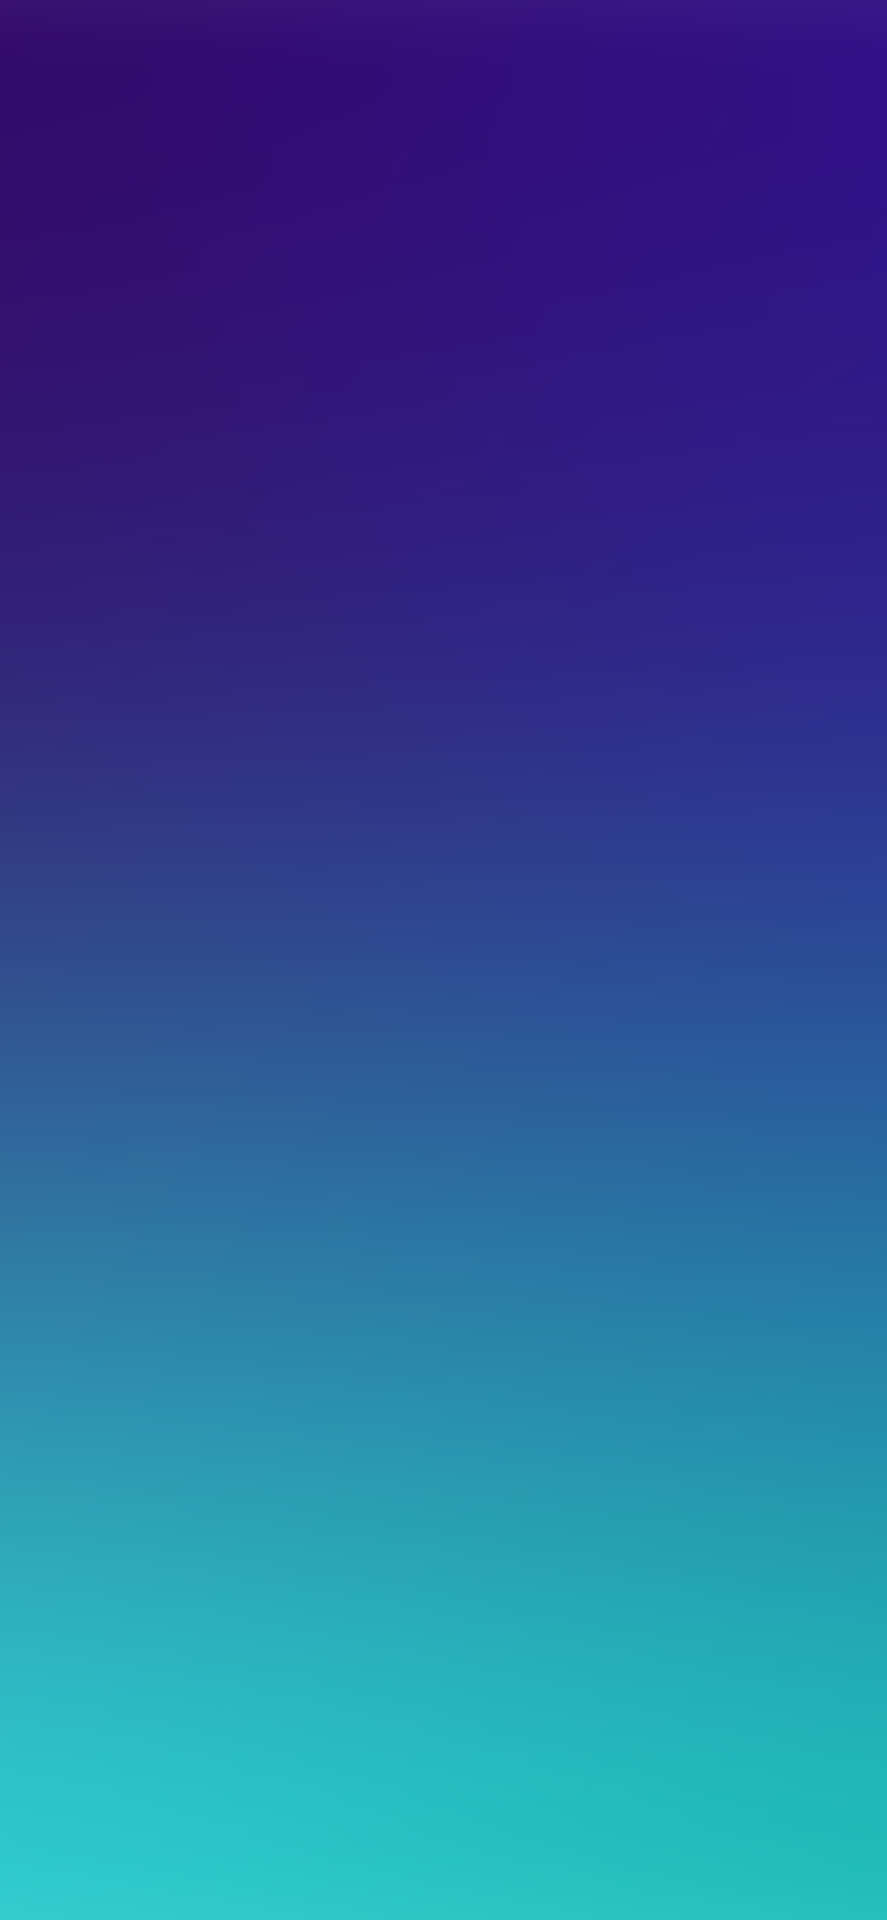 Unfondo Degradado De Color Azul Y Morado Fondo de pantalla